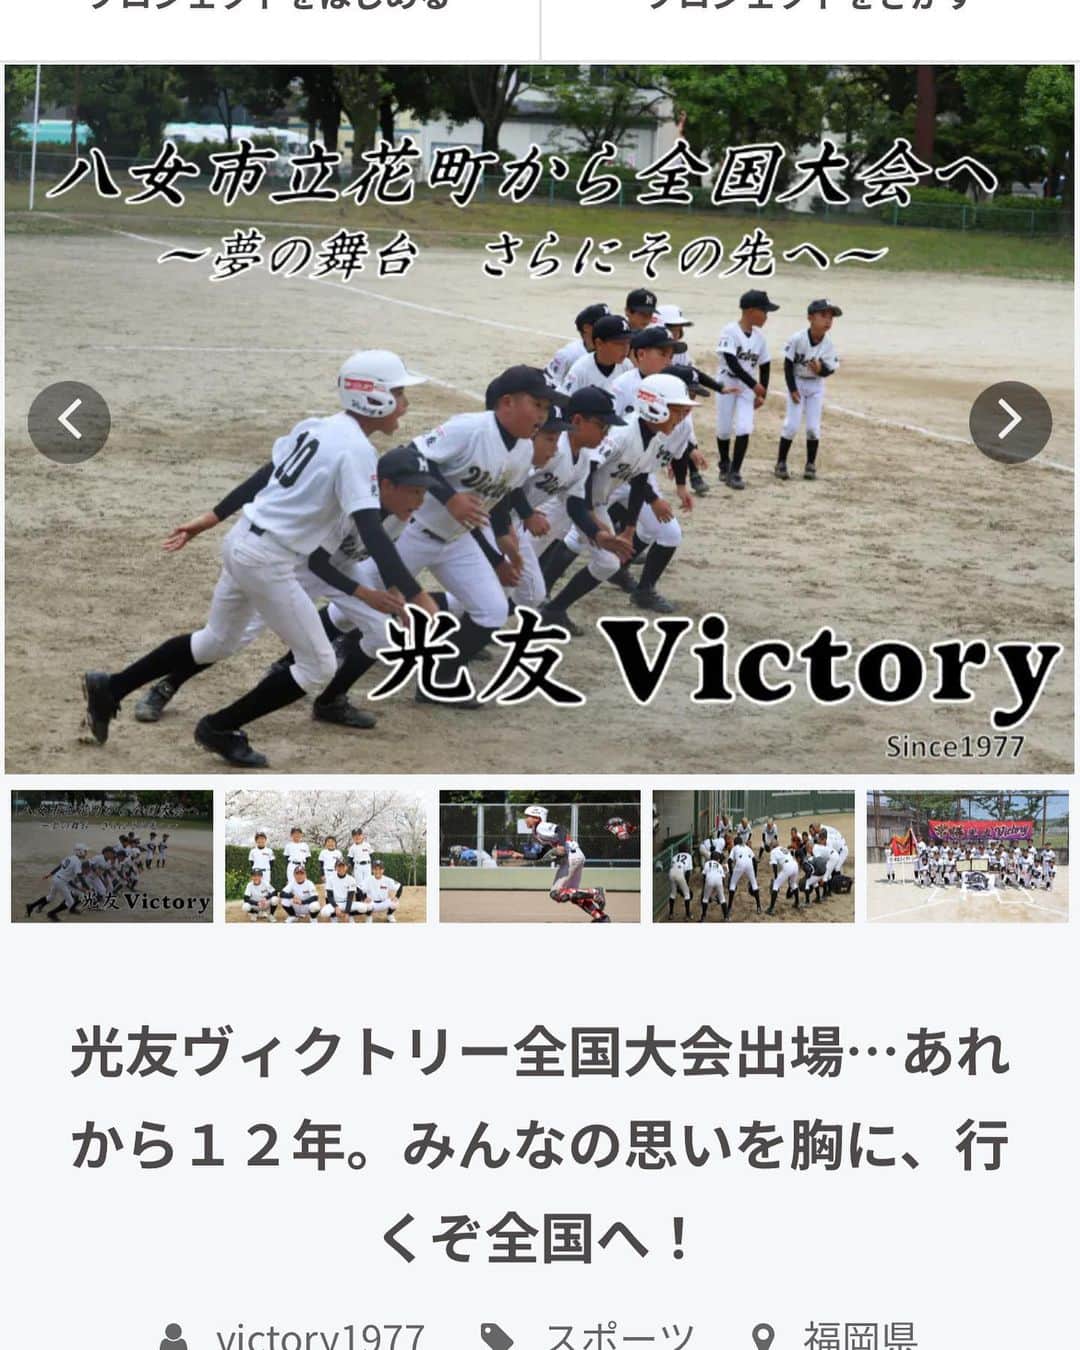 谷川昌希のインスタグラム：「この度僕の地元福岡県八女市立花町の少年野球チームが東京と和歌山で開催される全国大会2大会に出場することになりました👏 僕もこの町で育ちこの町で野球を学んできました！ 是非とも全国大会で名を轟かせて欲しいです！！ ここで1つ問題がありまして、、、 田舎のチームというのもあり2大会の資金もなかなかの資金がかかってきます。 保護者会OB会最後まで子ども達の為にも頑張っているとのことです！ 現状なかなか厳しいとも聞いてます。そこでクラウドファンディングの協力をして頂きたいとのことです。一緒に応援して頂ければ嬉しいです🙇‍♂️ ダグに少年野球のアカウントつけます！ そこからクラウドファンディングのご協力よろしくお願いします🙇‍♂️」